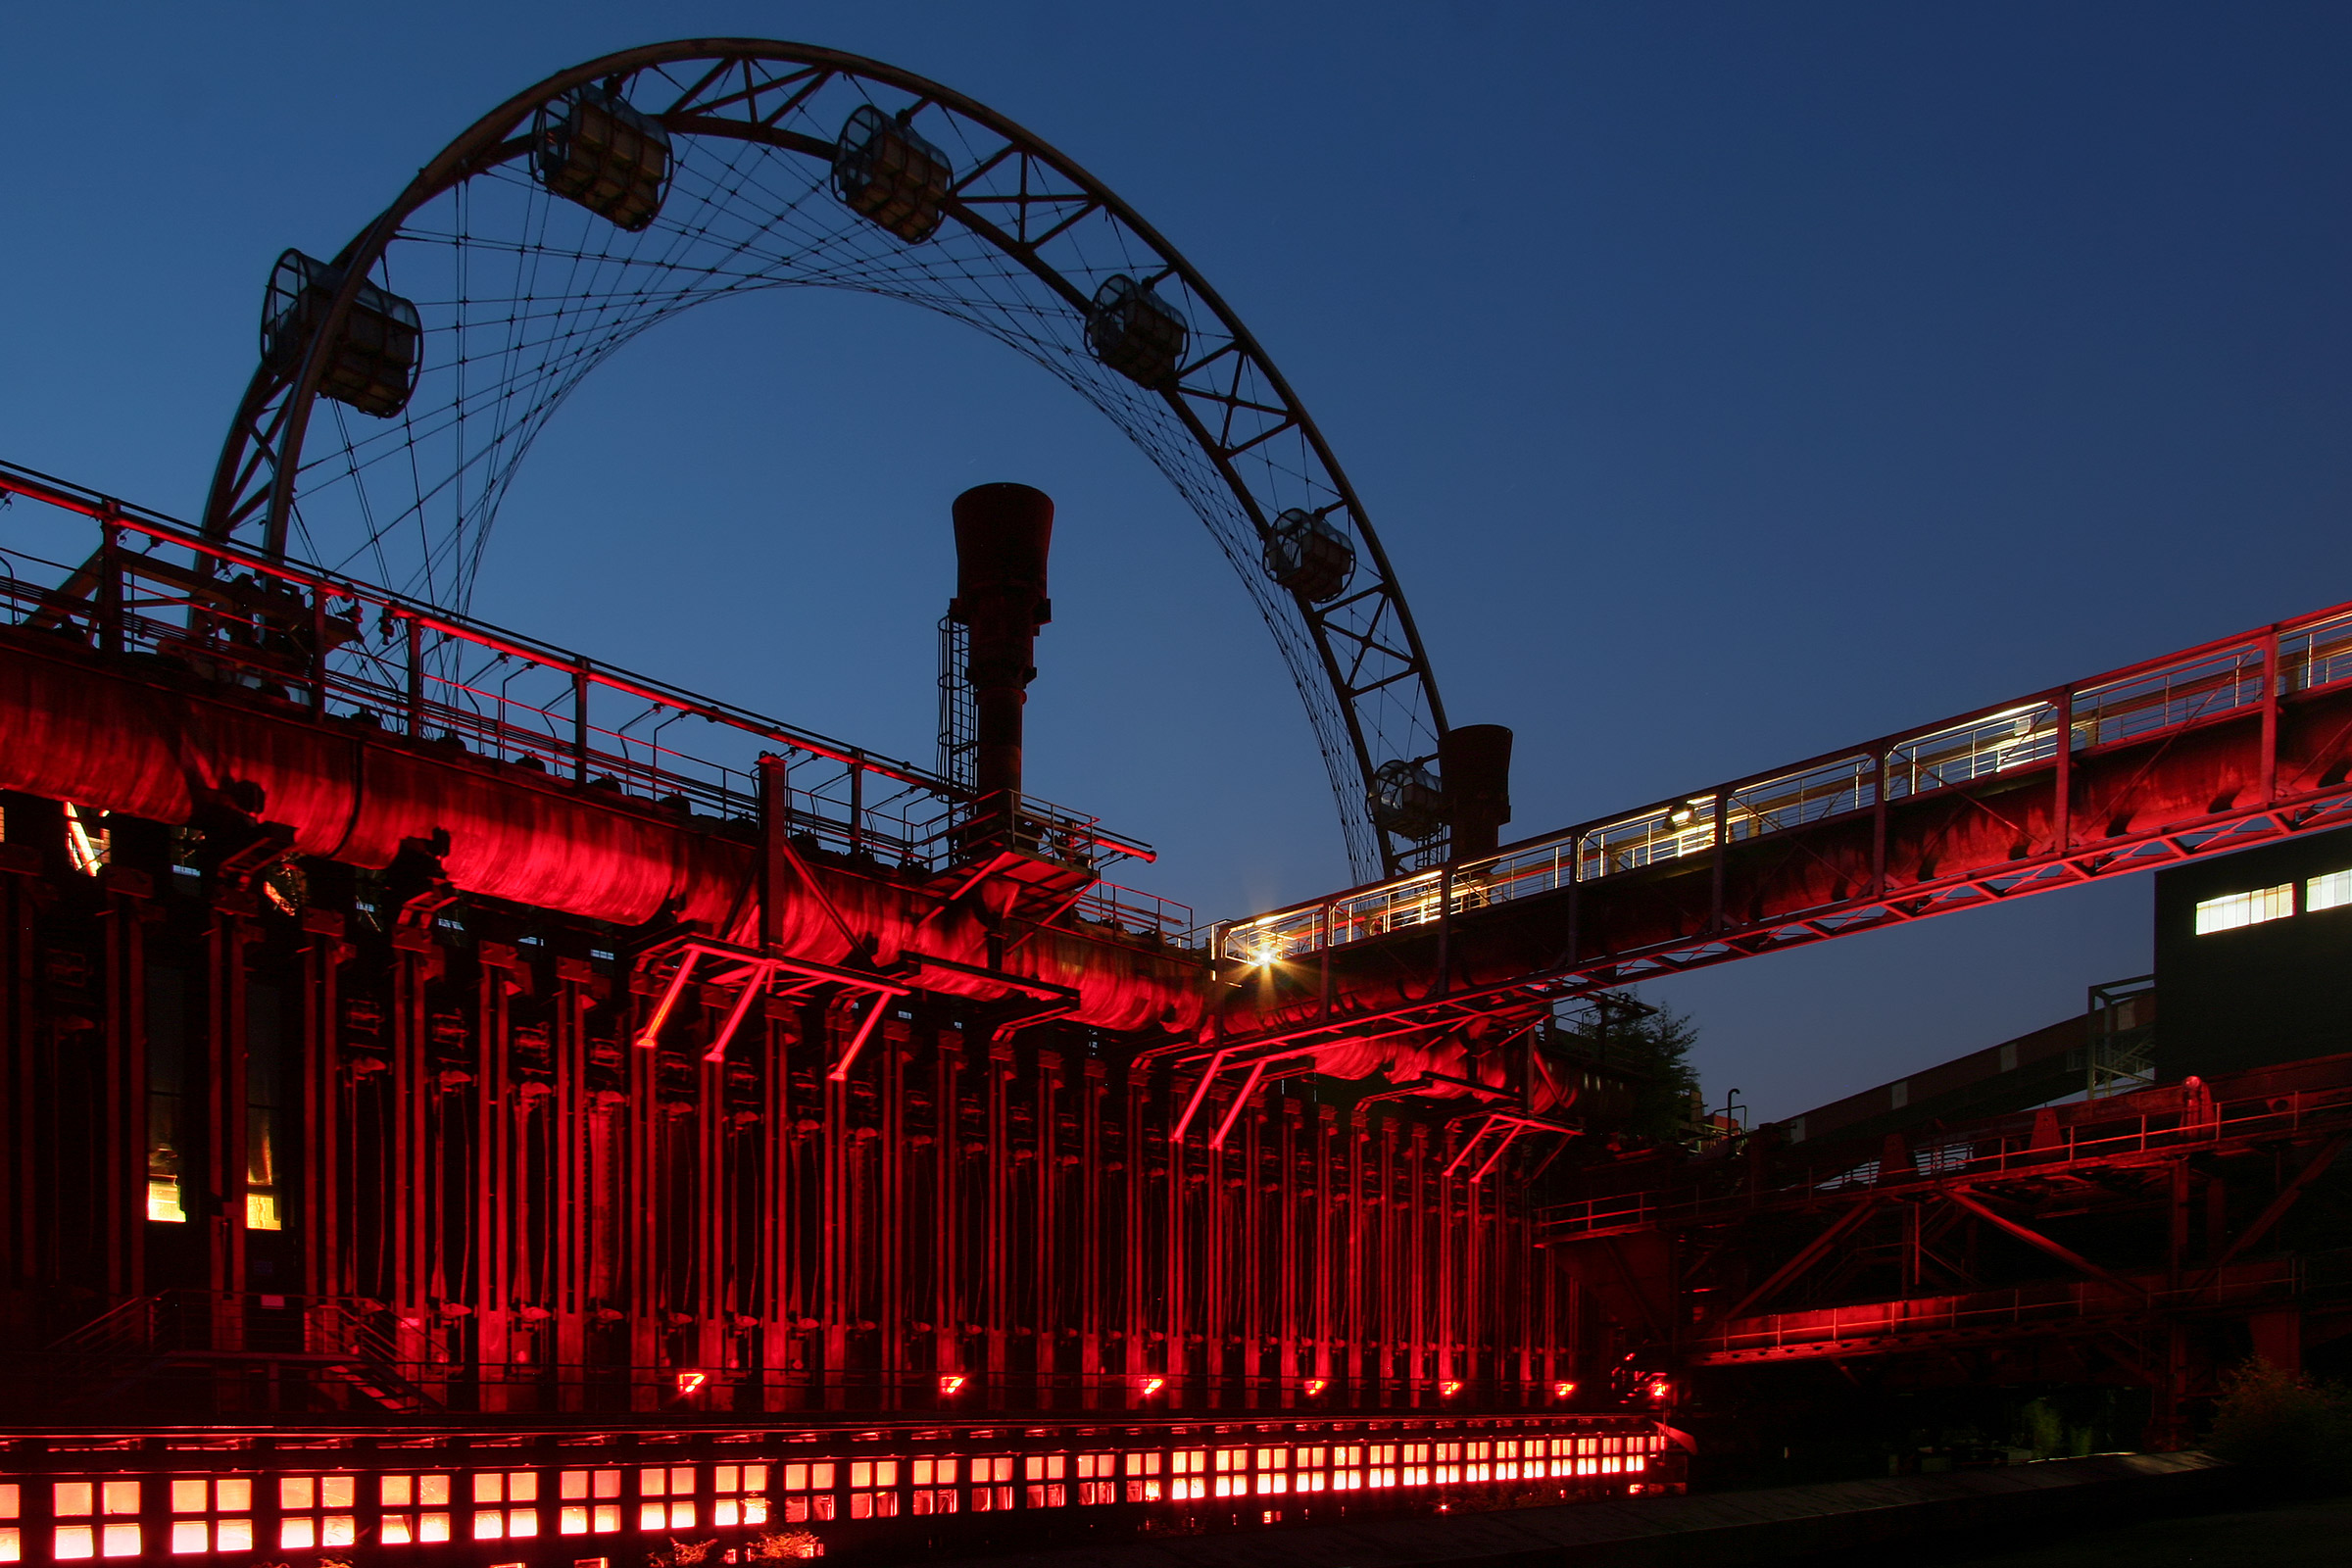 Sonnenrad Zollverein.jpg